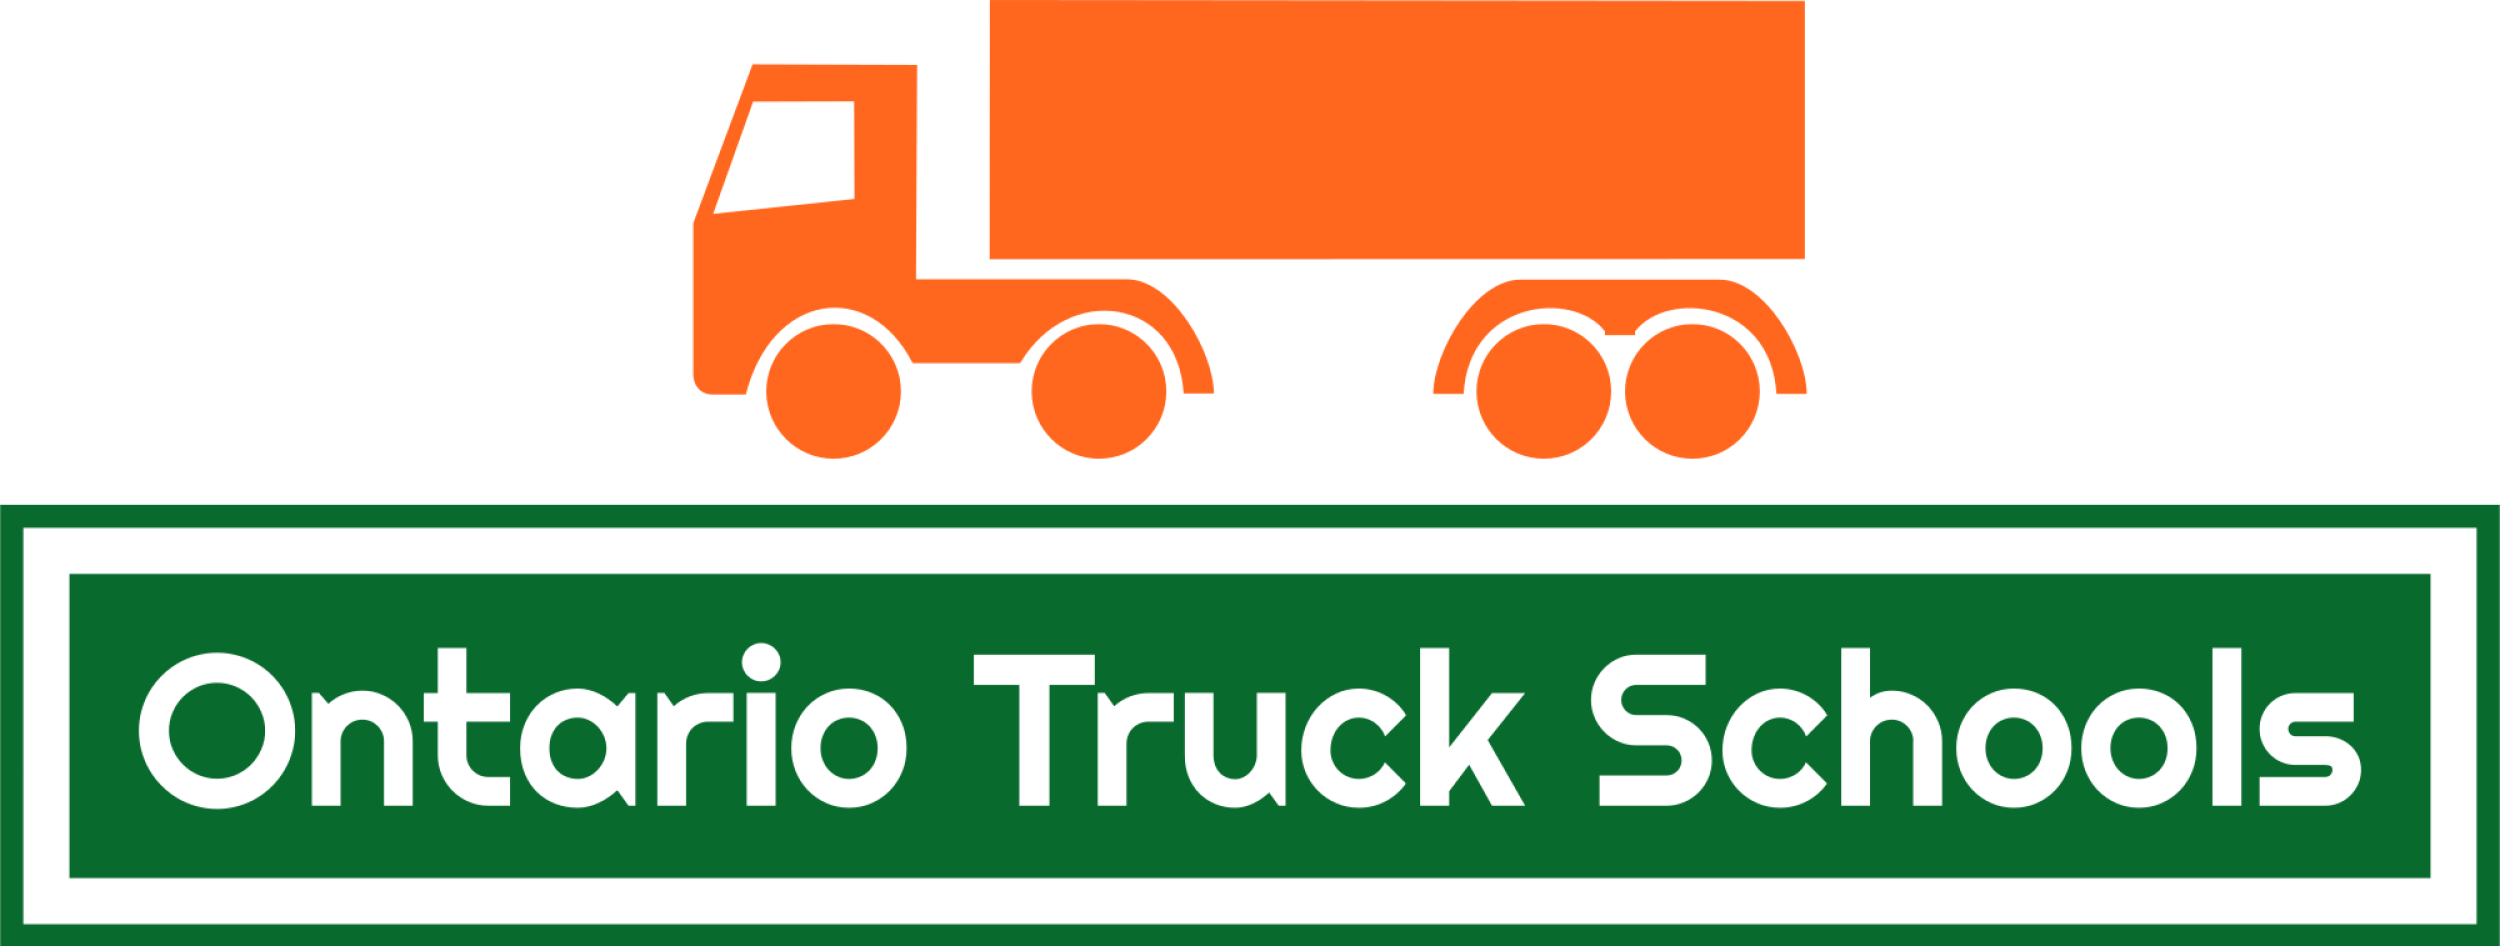 Ontario Truck Schools